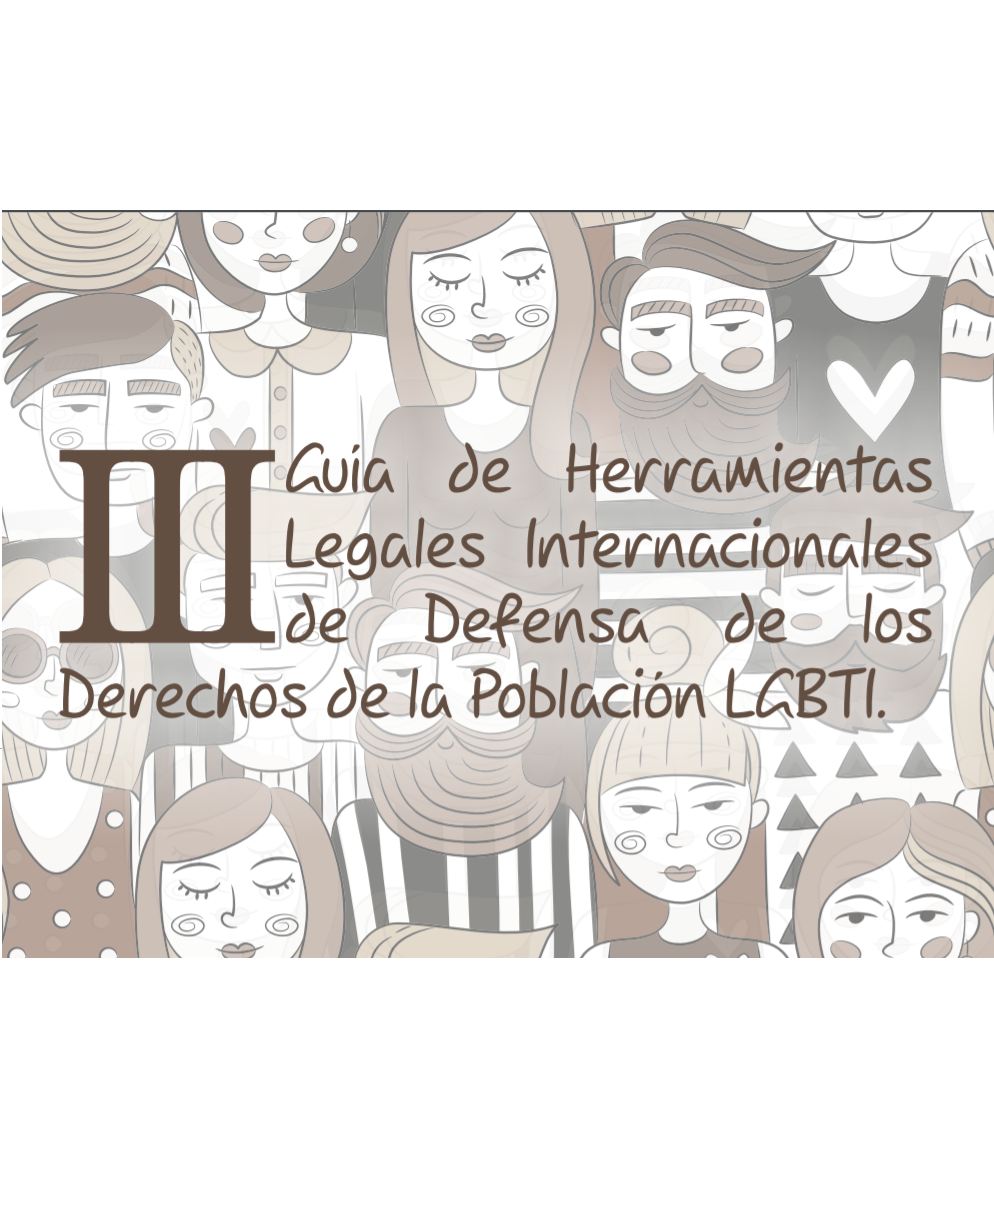 III Guía de Herramientas Legales internacionales de los Derechos de la Población LGBTI  width=